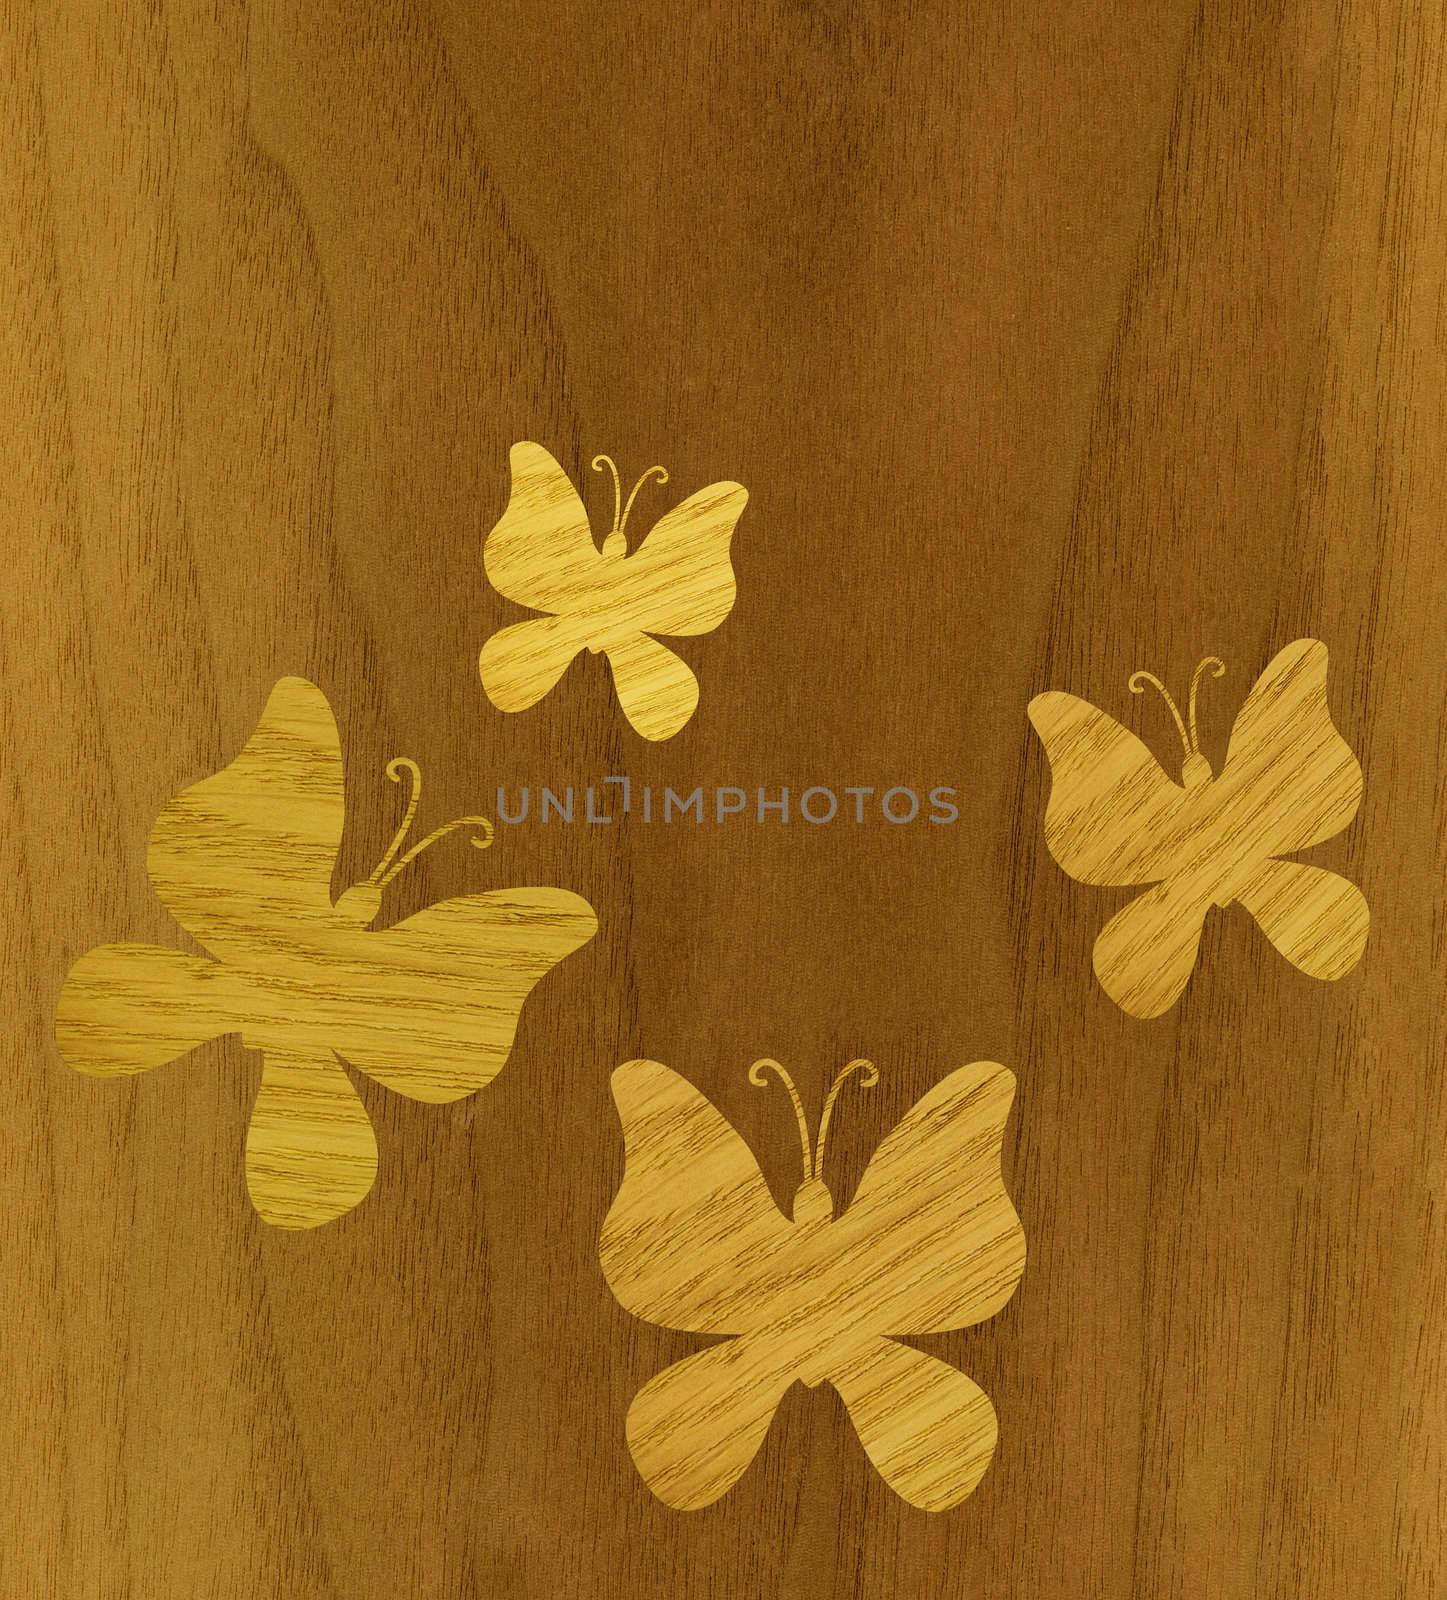 Marquetry, butterflies of ash wood veneer against the background of teak wood